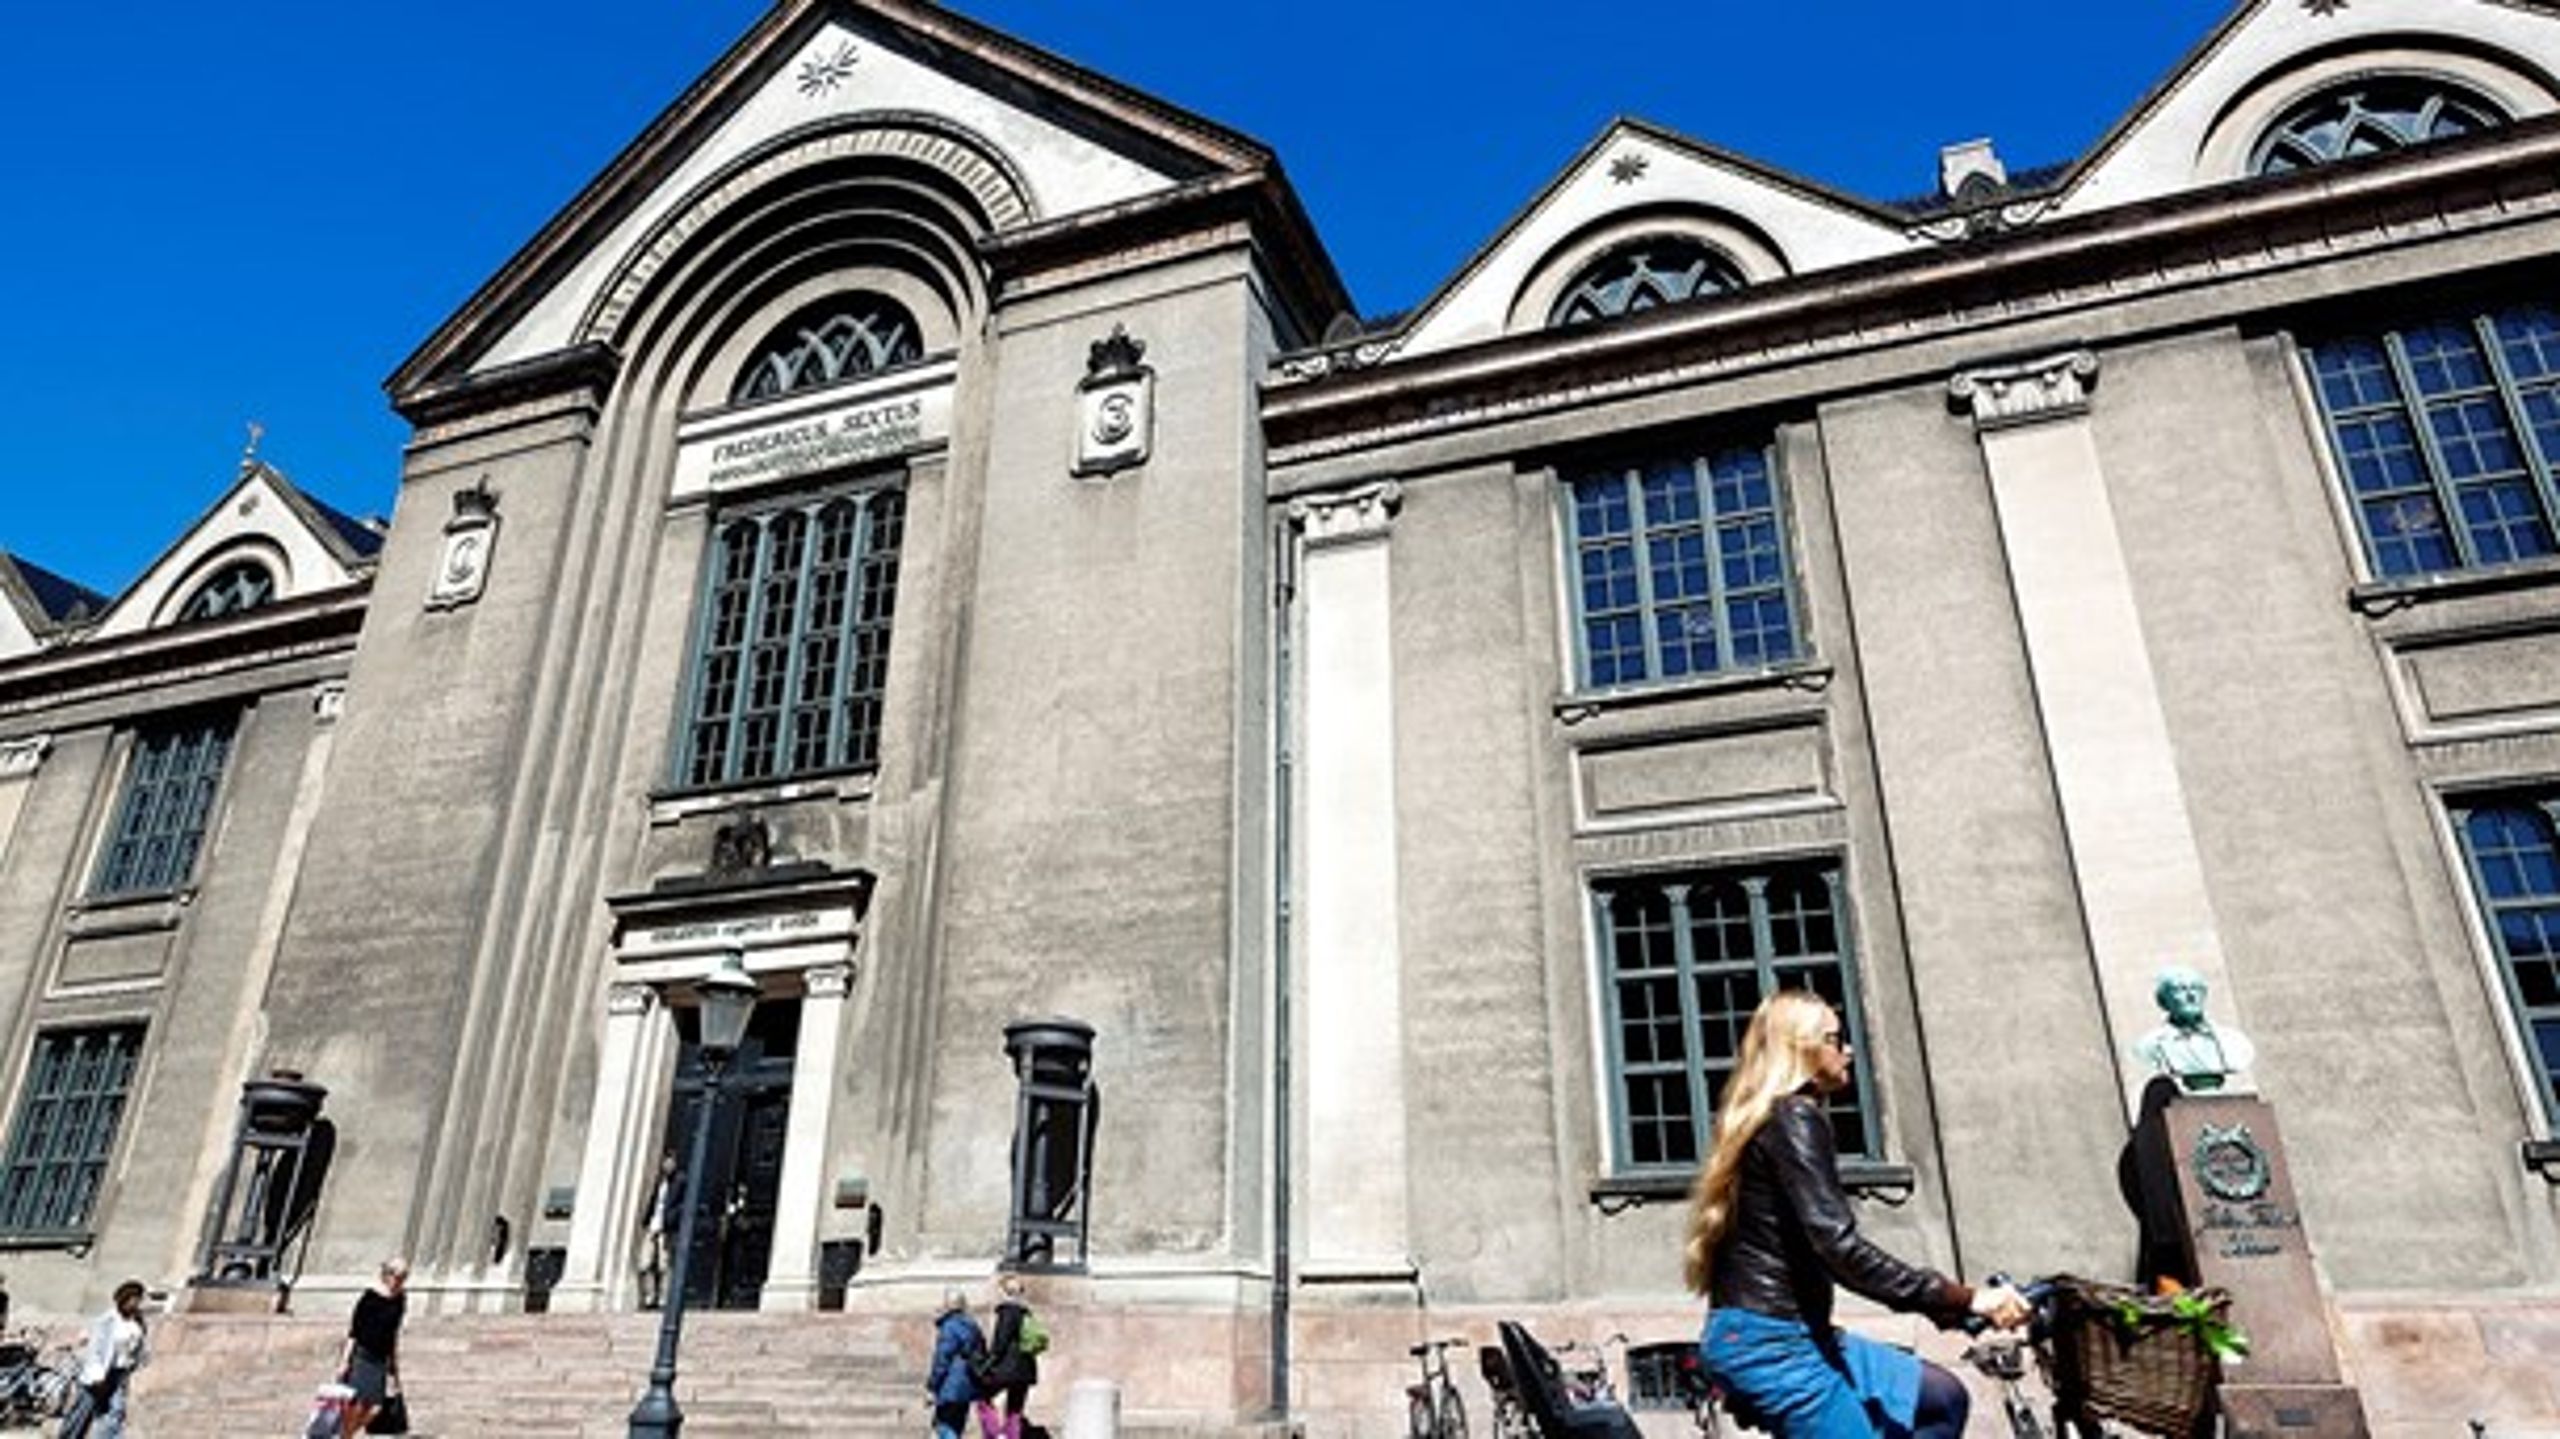 Der er sket et fald i antallet af samarbejdsaftaler med mellem universiteter og det private erhvervsliv, hvor landets største universitet, Københavns Universitet,&nbsp;placerer under sig under Aarhus Universitet og DTU.